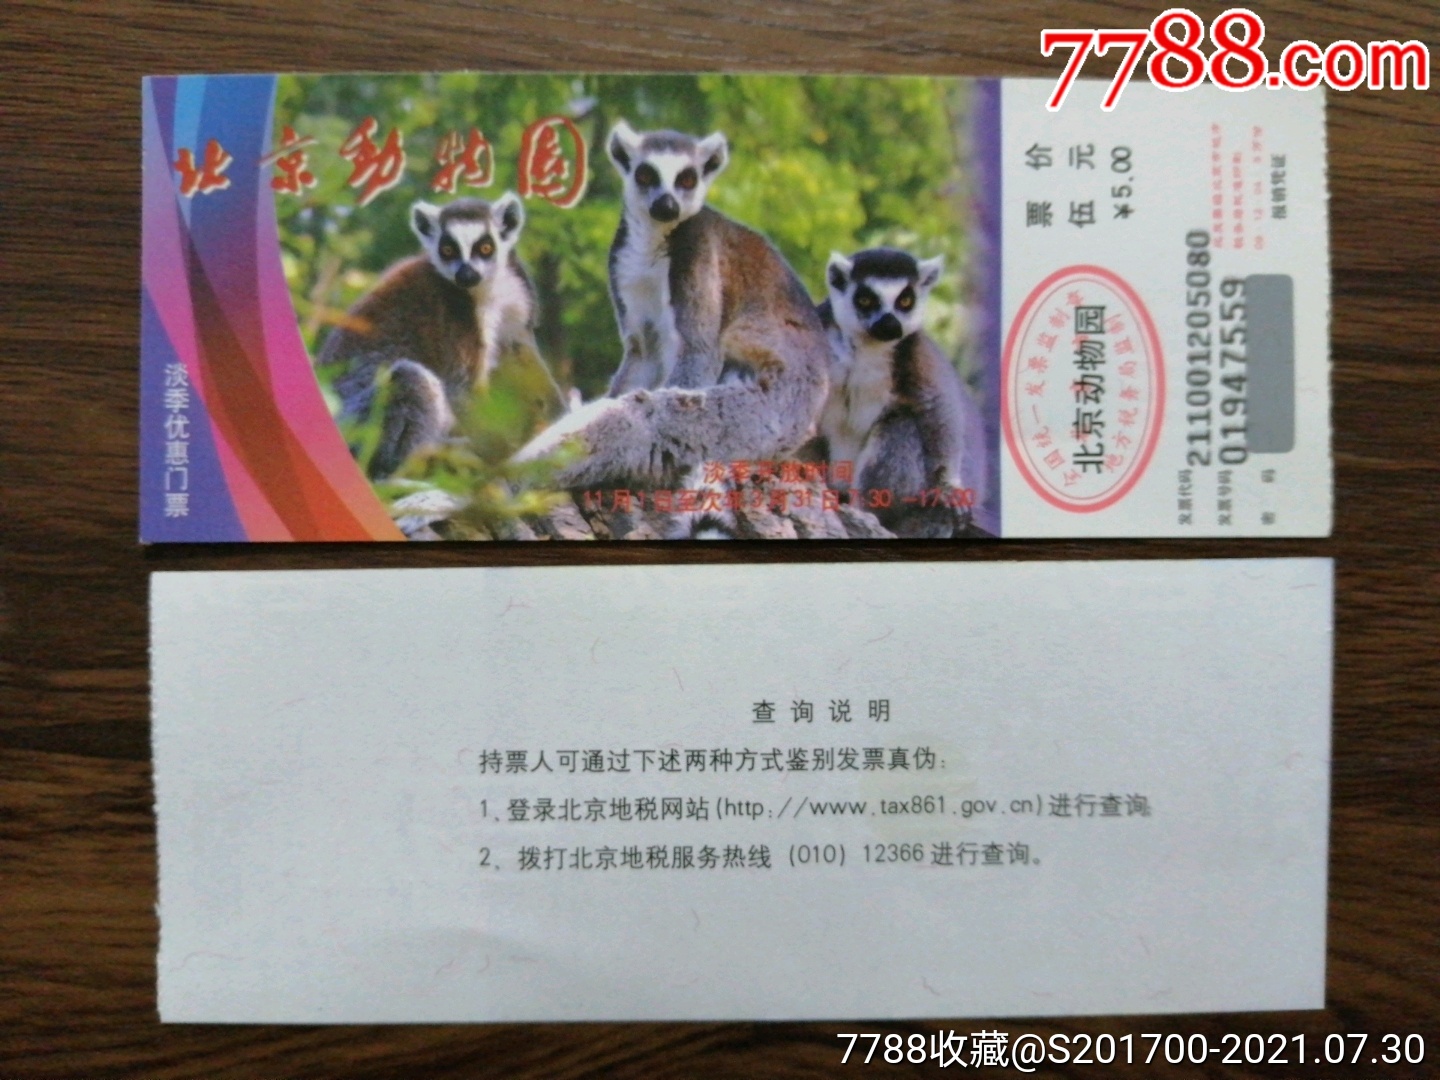 北京动物园门票